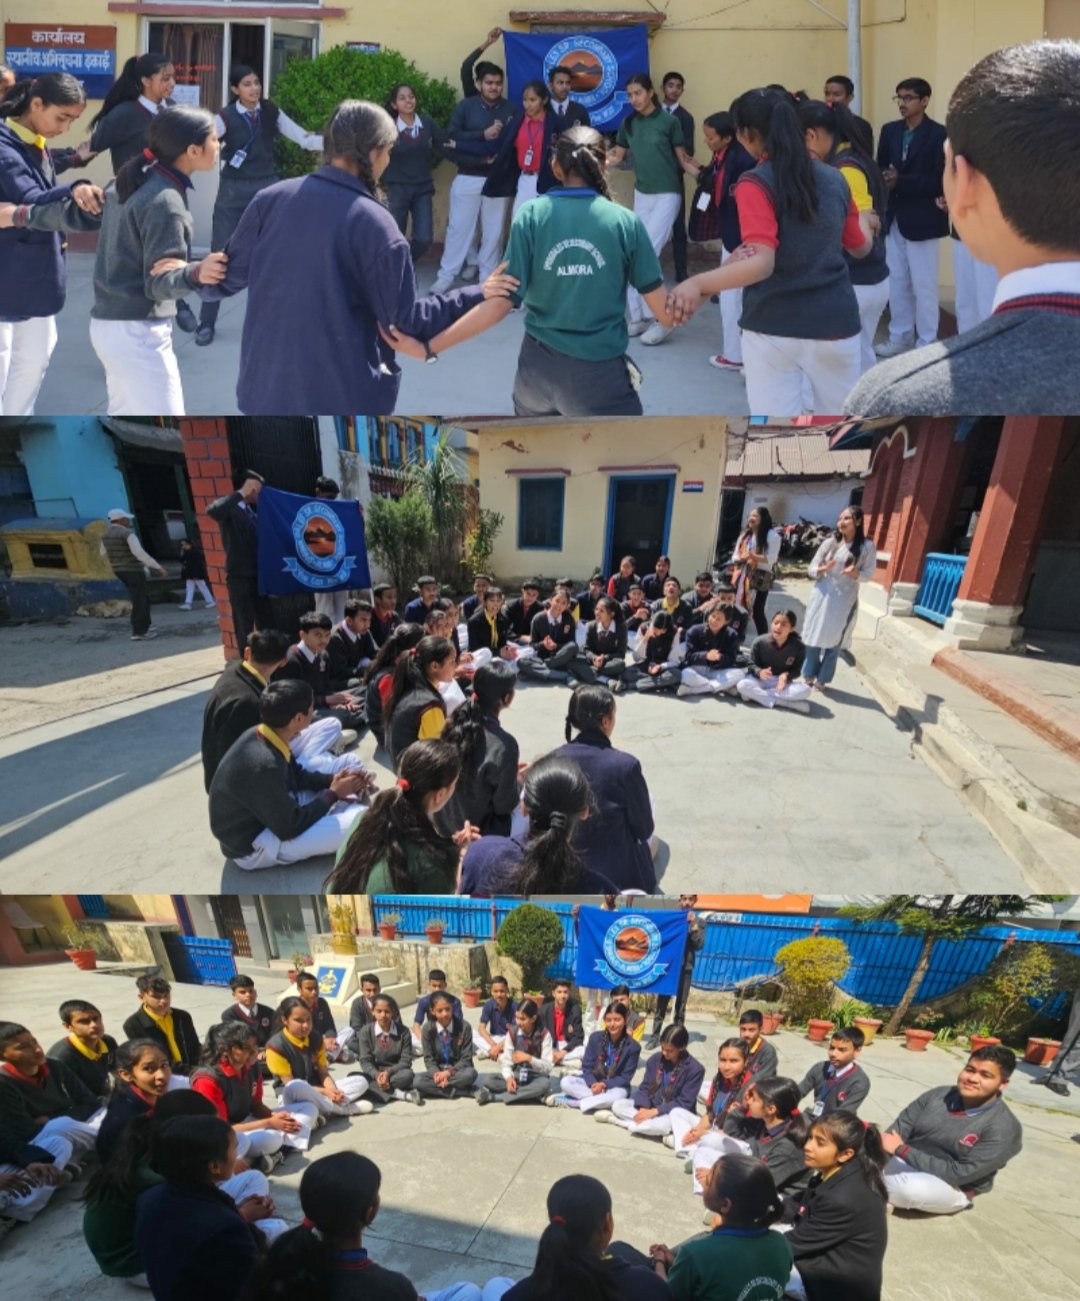 अल्मोड़ा: स्प्रिंगडेल्स सीनियर सेकेंडरी स्कूल के विद्यार्थियों ने बिखेरे होली के रंग, अनूठे संदेश के साथ रंगों से सजाया अल्मोड़ा शहर